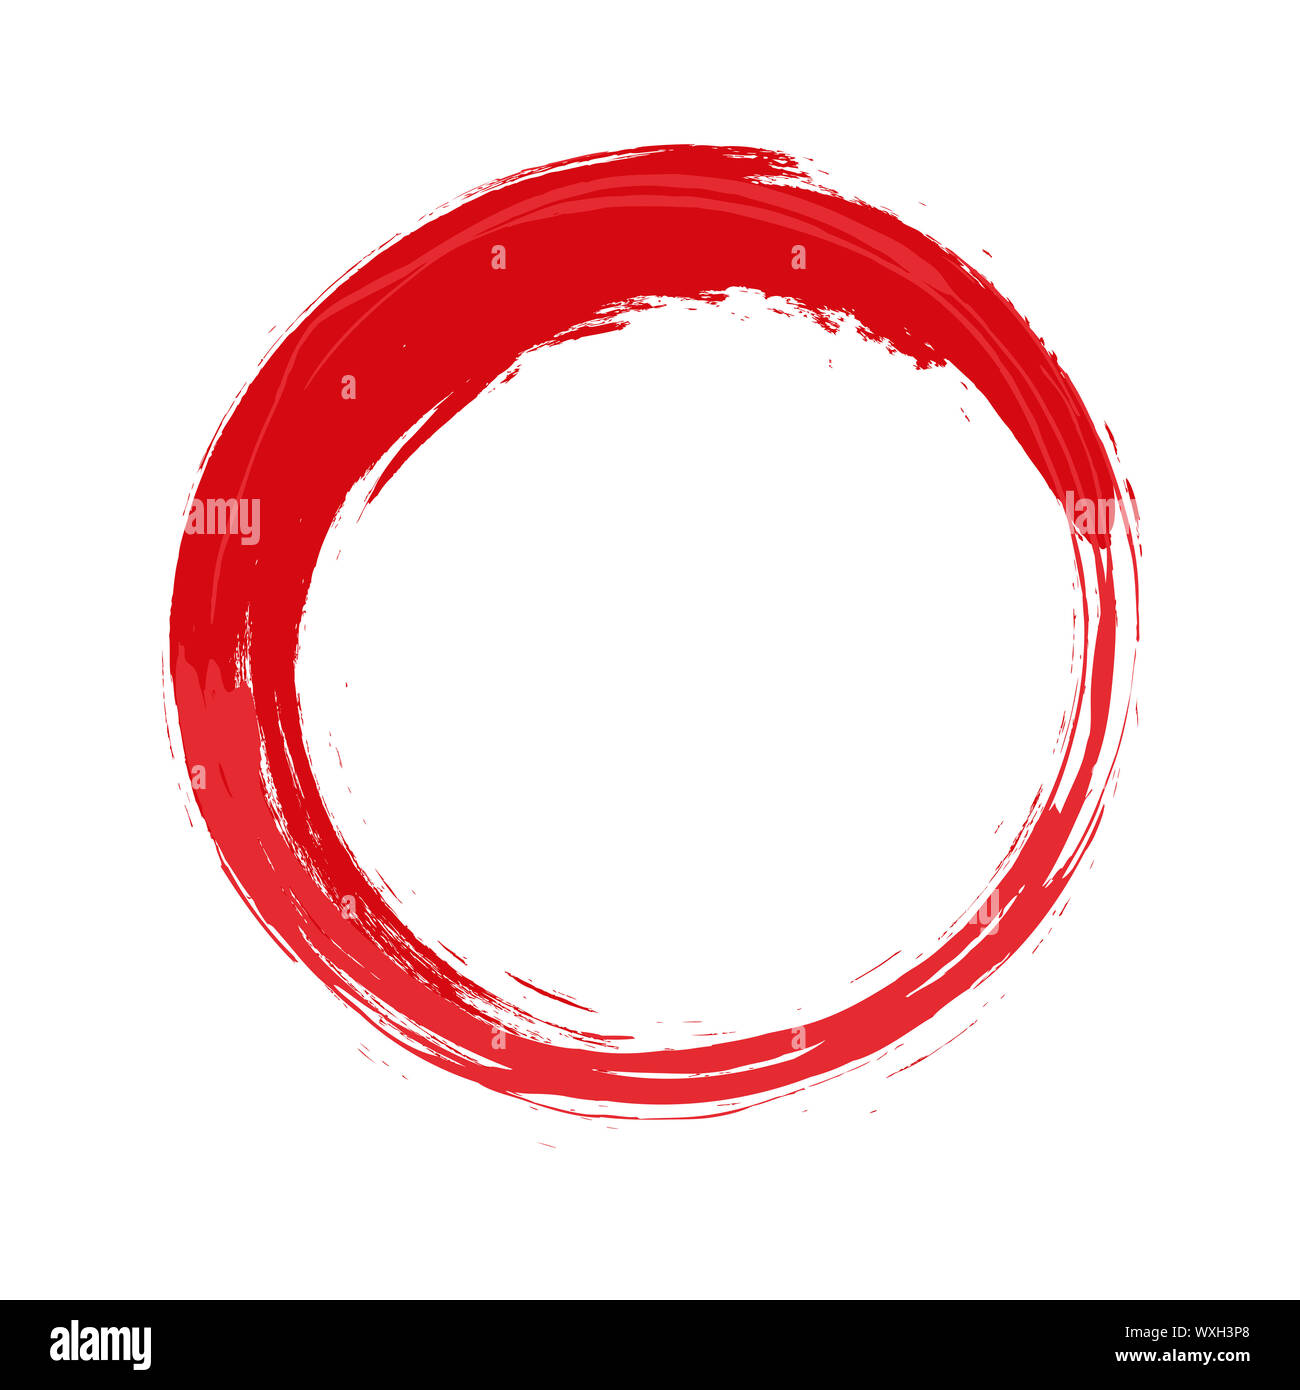 Красный кружок на прозрачном фоне